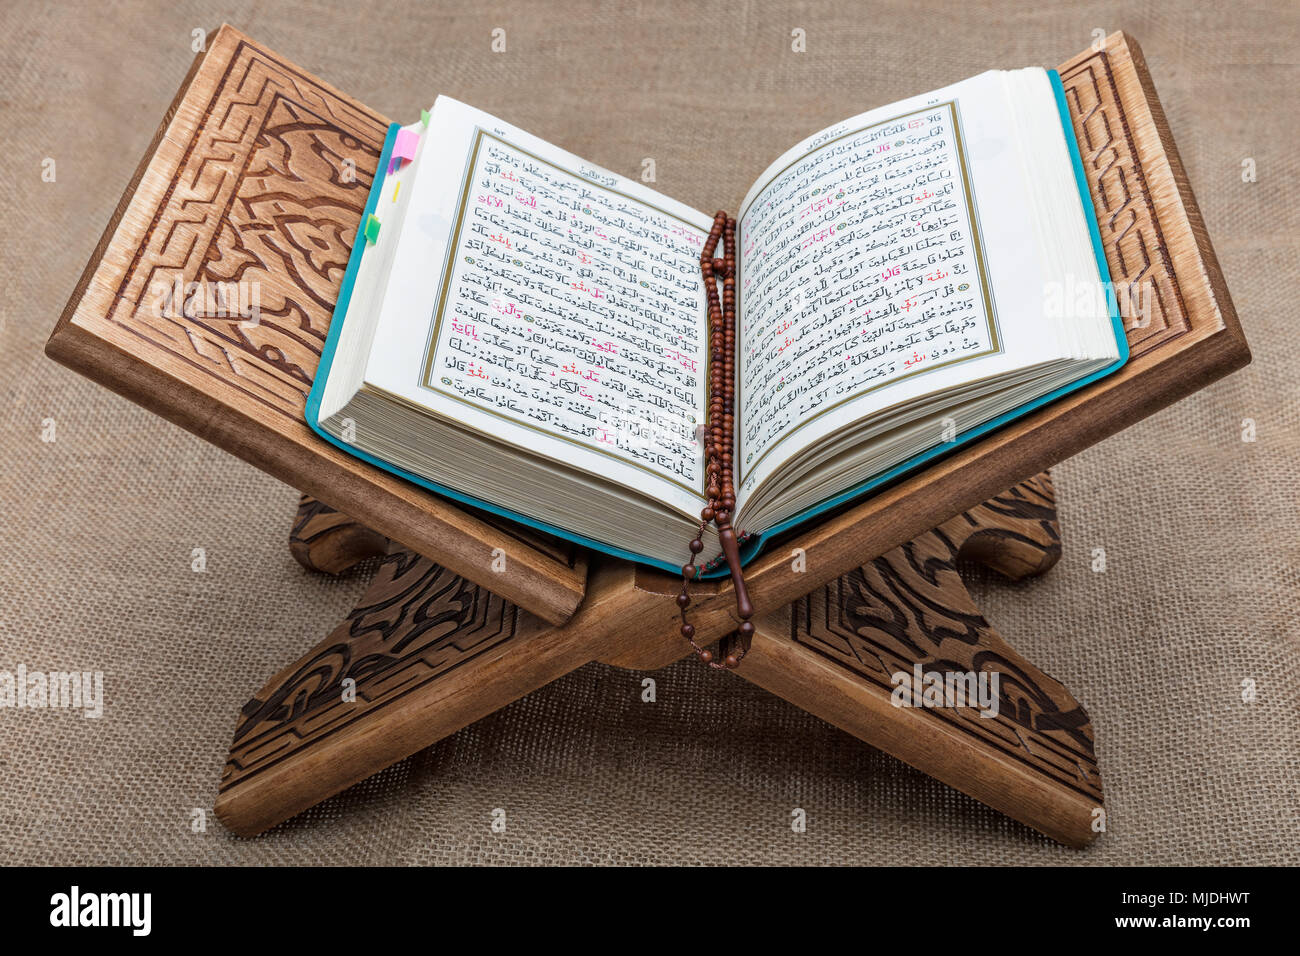 Koran Das Heilige Buch Der Muslime Auf Der Ganzen Welt Auf Einer Holzernen Stander Platziert Stockfotografie Alamy